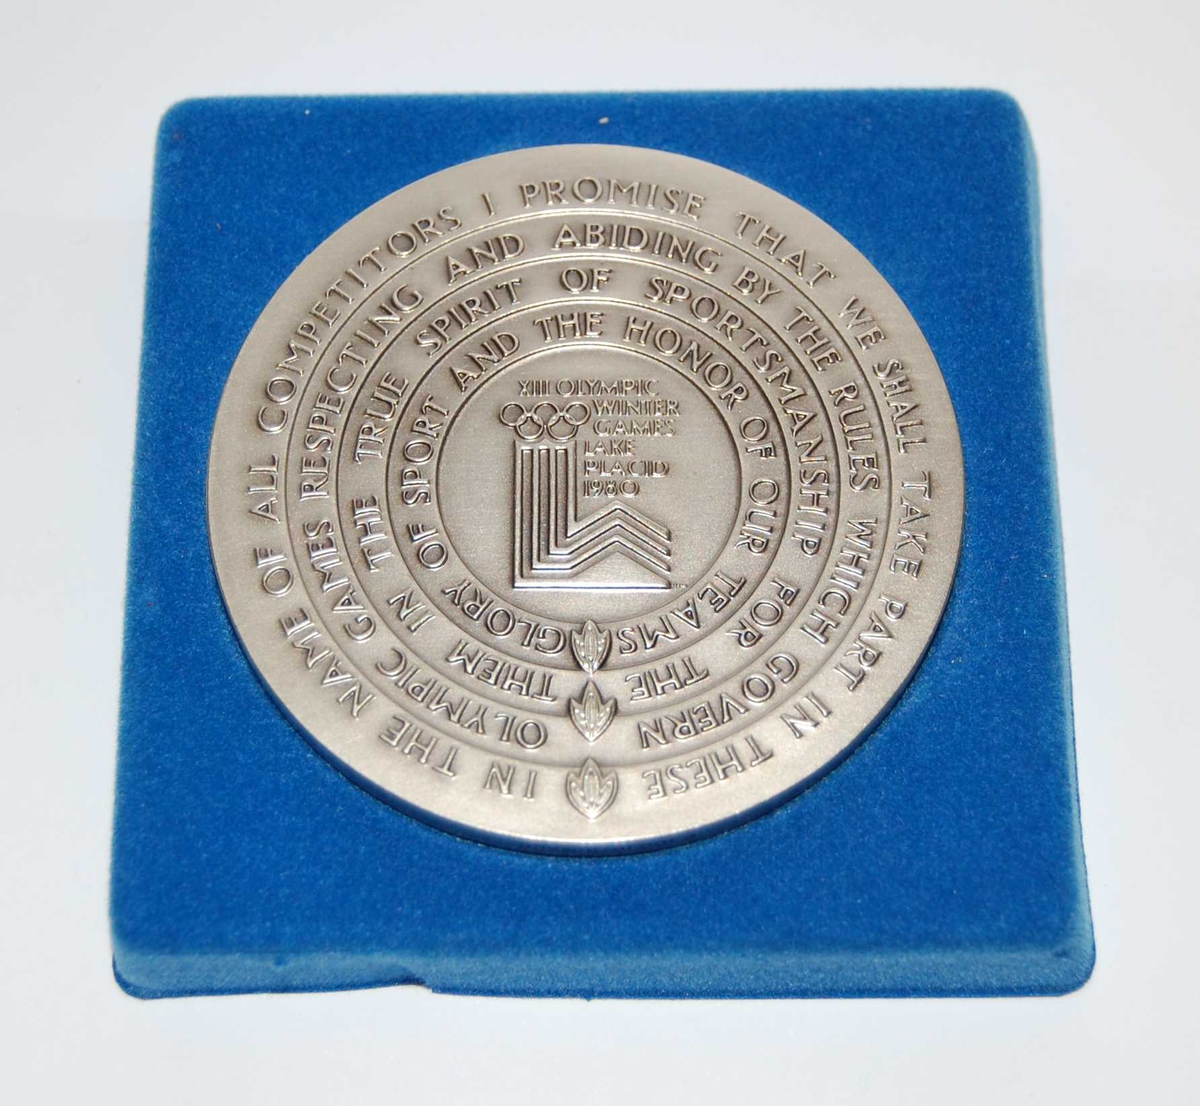 Minnemedalje med emblemet for de olympiske vinterleker i Lake Placid i 1980 omringet av teksten den olympiske ed. På medaljen er det også motiv av ulike idrettsutøvere som driver forskjellige grener. 
Medaljen ligger i et blått etui.

Deltagermedalje. Ligger i turkis eske.